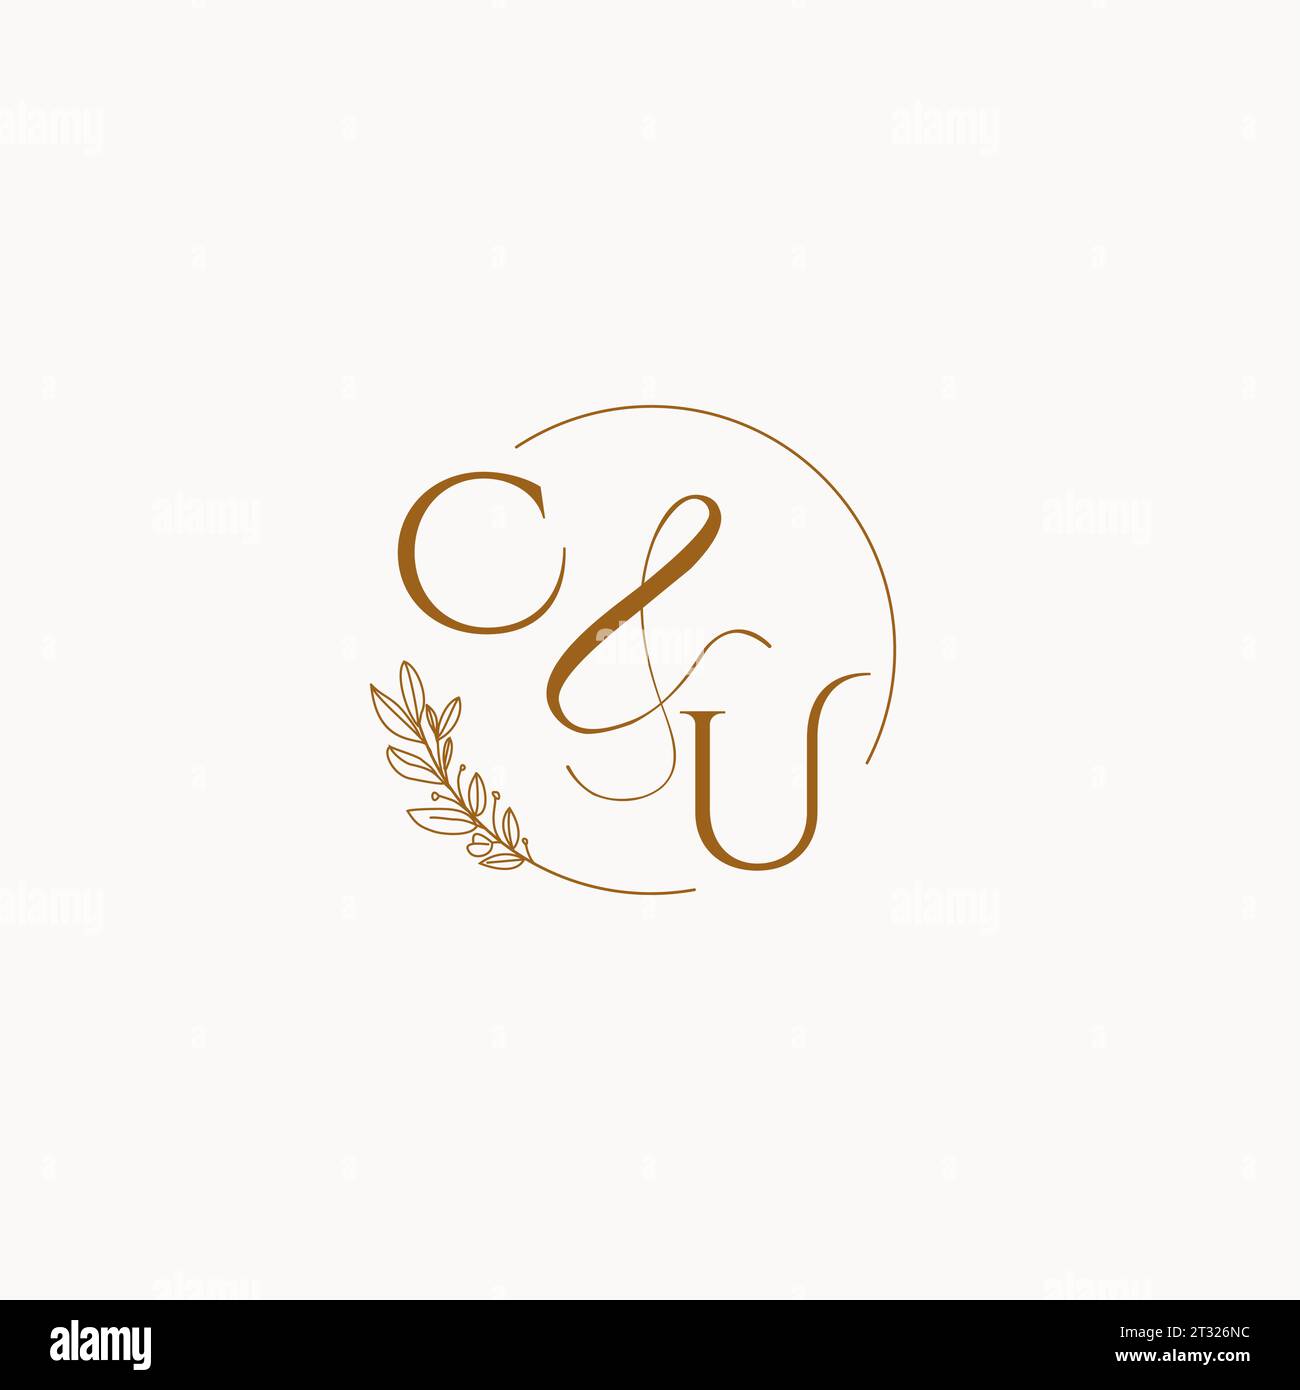 CU initial wedding monogram logo design ideas Stock Vector